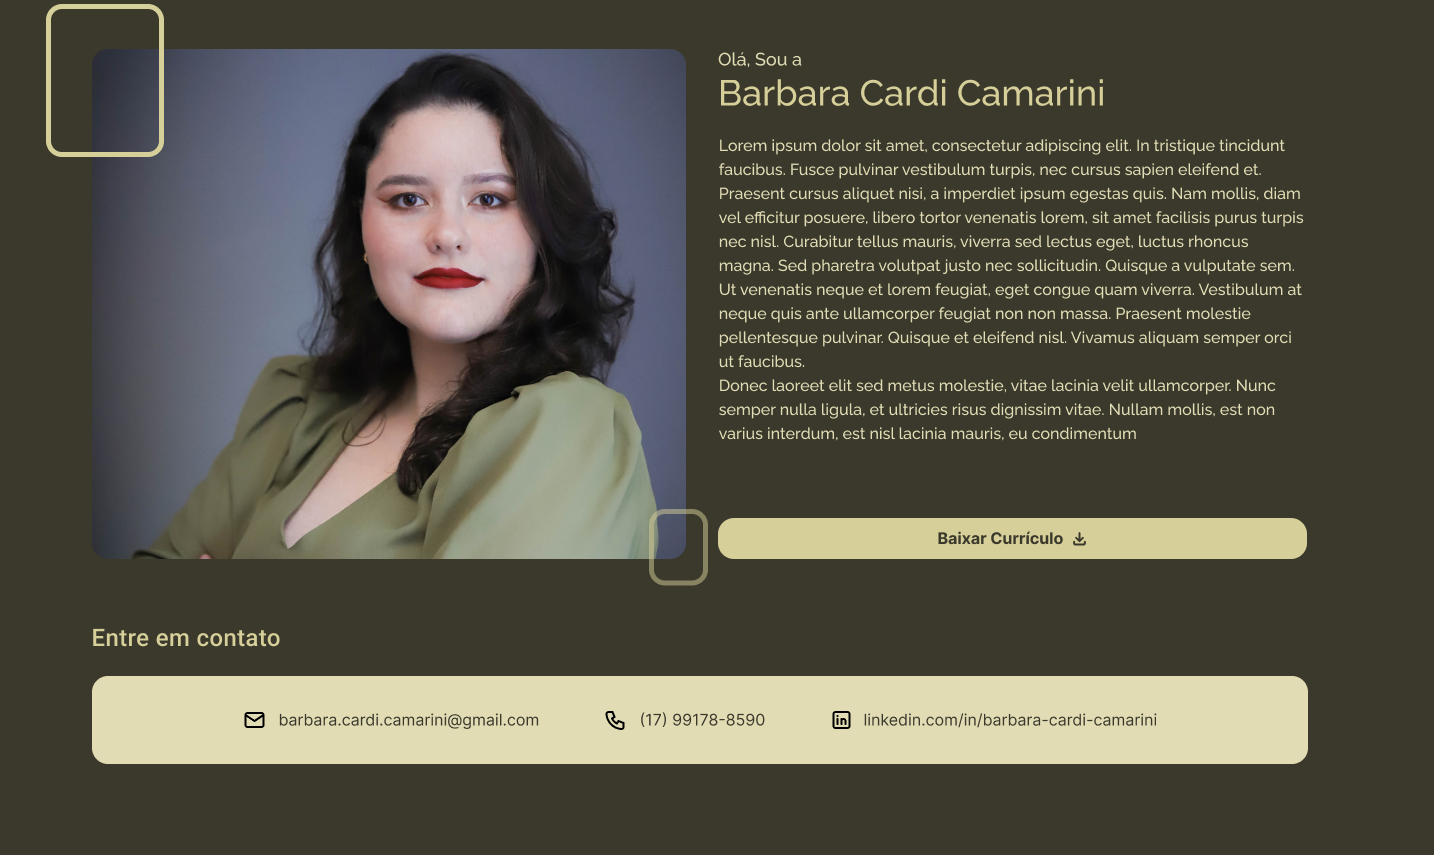 Barbara Cardi